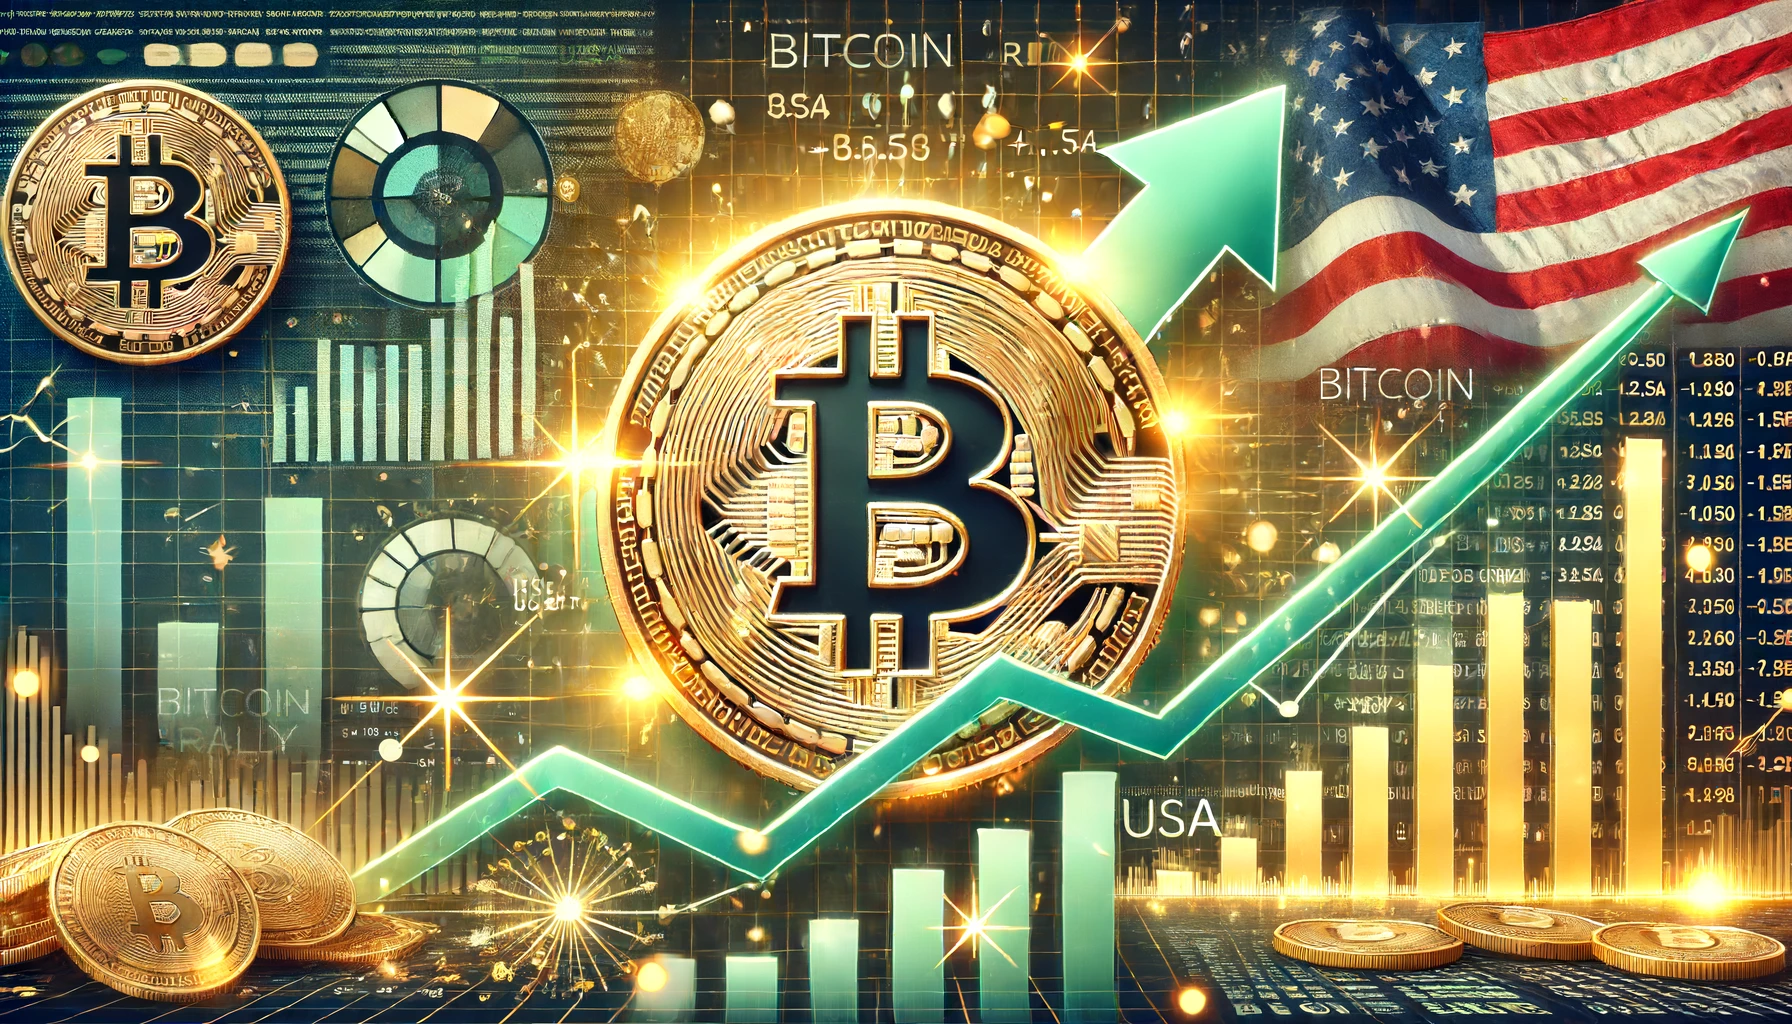 Kann sich die Bitcoin Rallye nun nach den jüngsten Inflations- und Wirtschaftsdaten aus den USA fortsetzen?